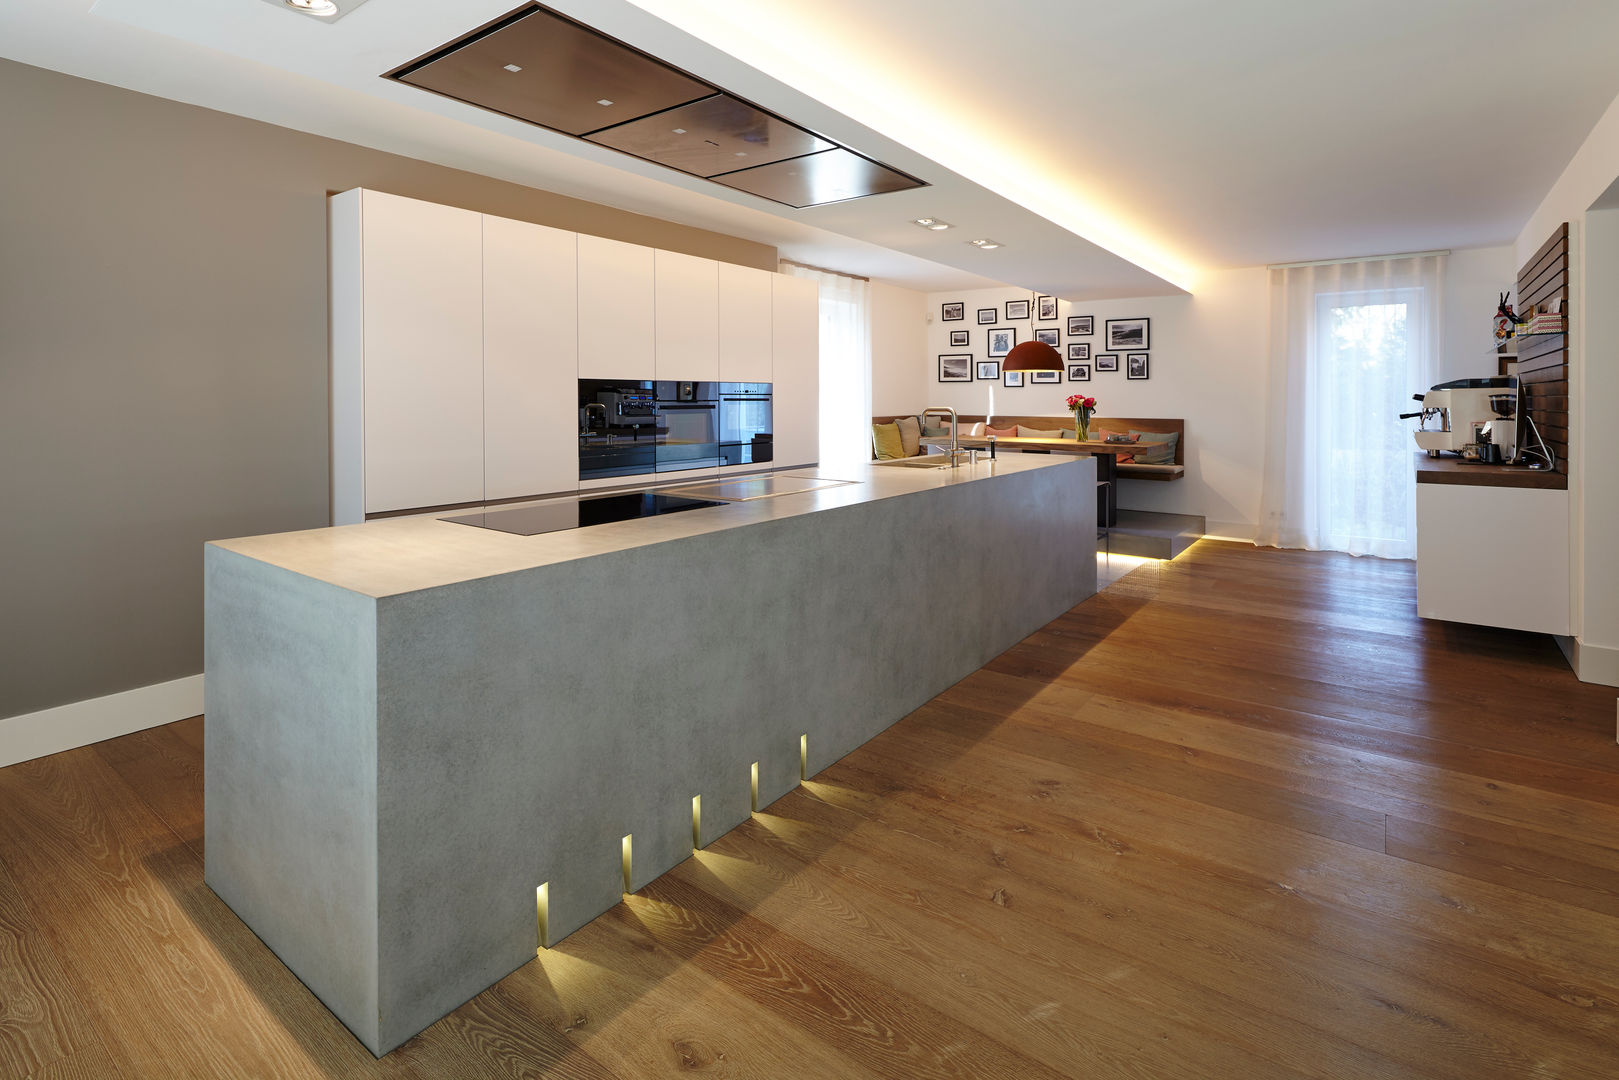 Haus Ku., Lioba Schneider Architekturfotografie Lioba Schneider Architekturfotografie Modern style kitchen